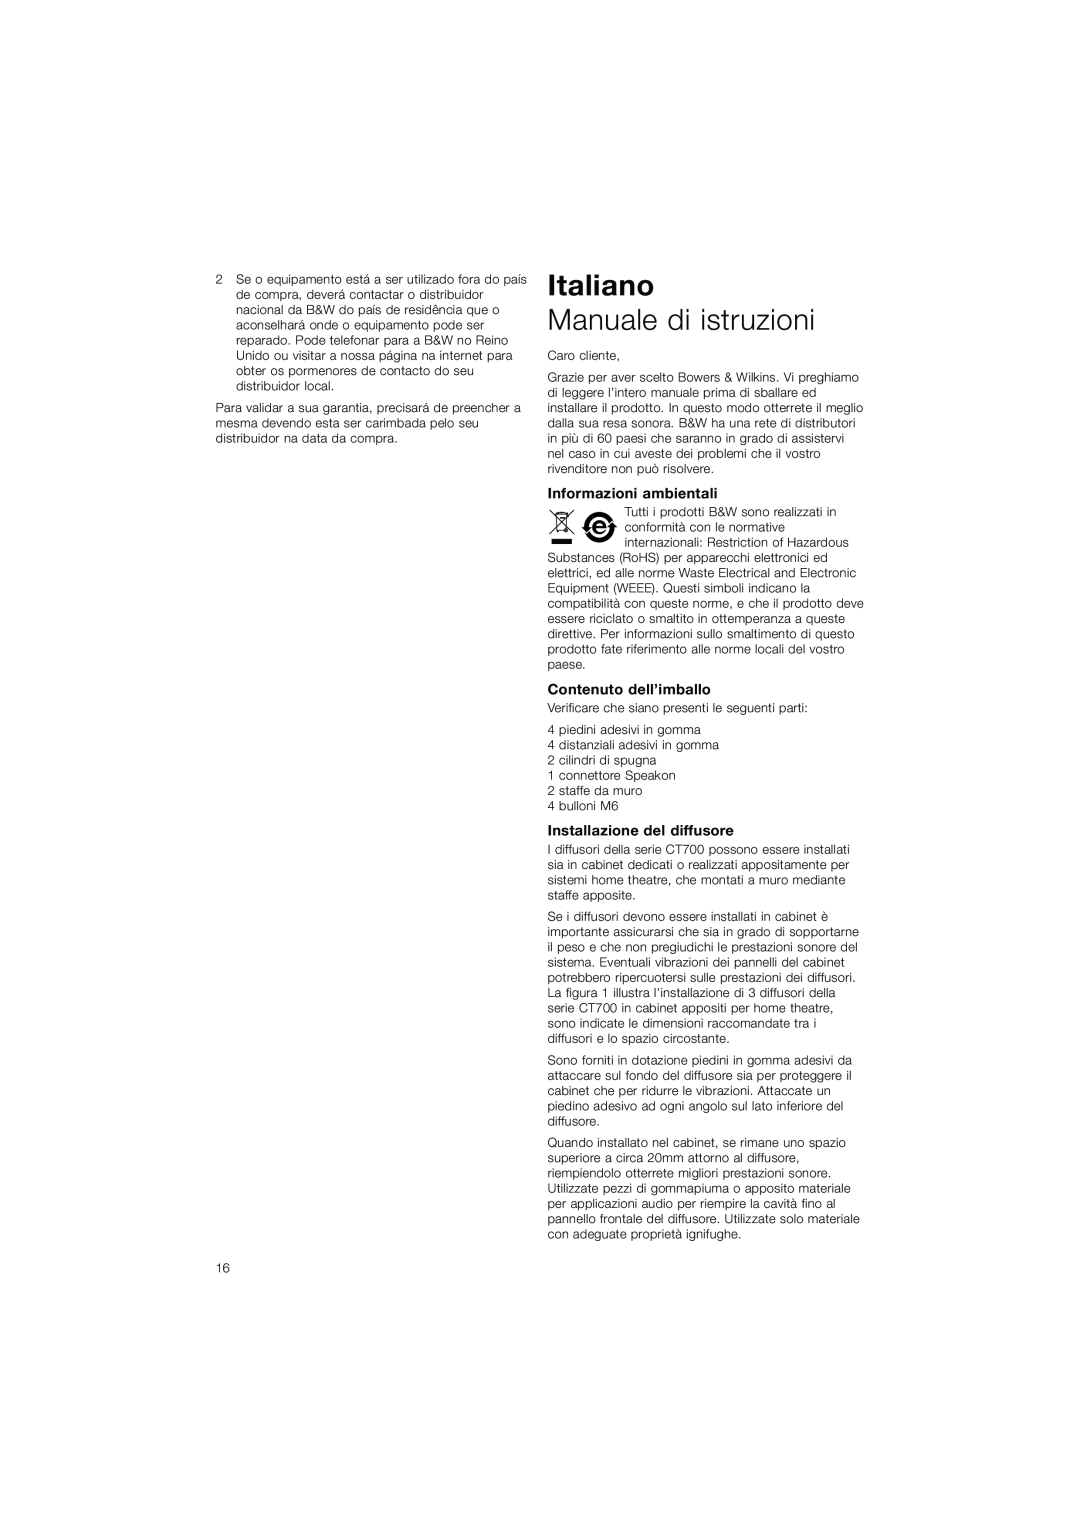 Bowers & Wilkins CT7.3 LCRS, CT7.5 LCRS Italiano, Manuale di istruzioni, Informazioni ambientali, Contenuto dell’imballo 